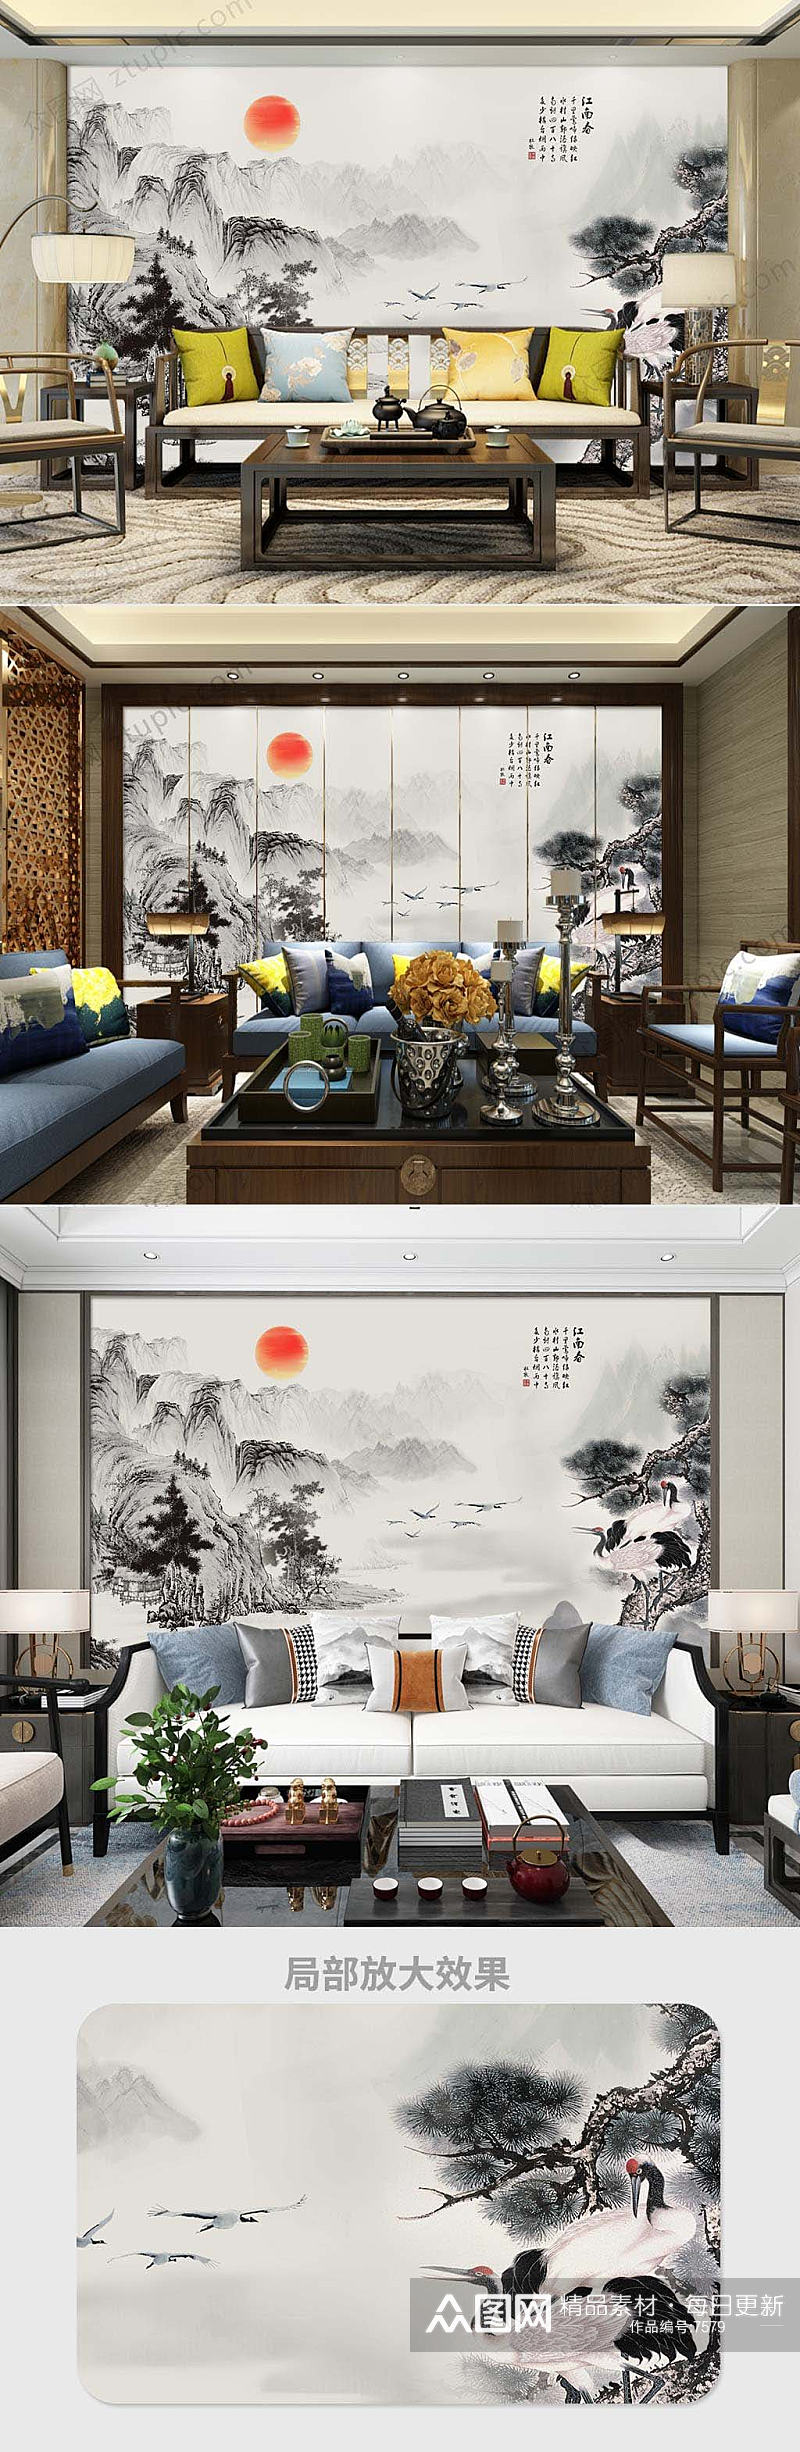 中国风水墨背景墙素材